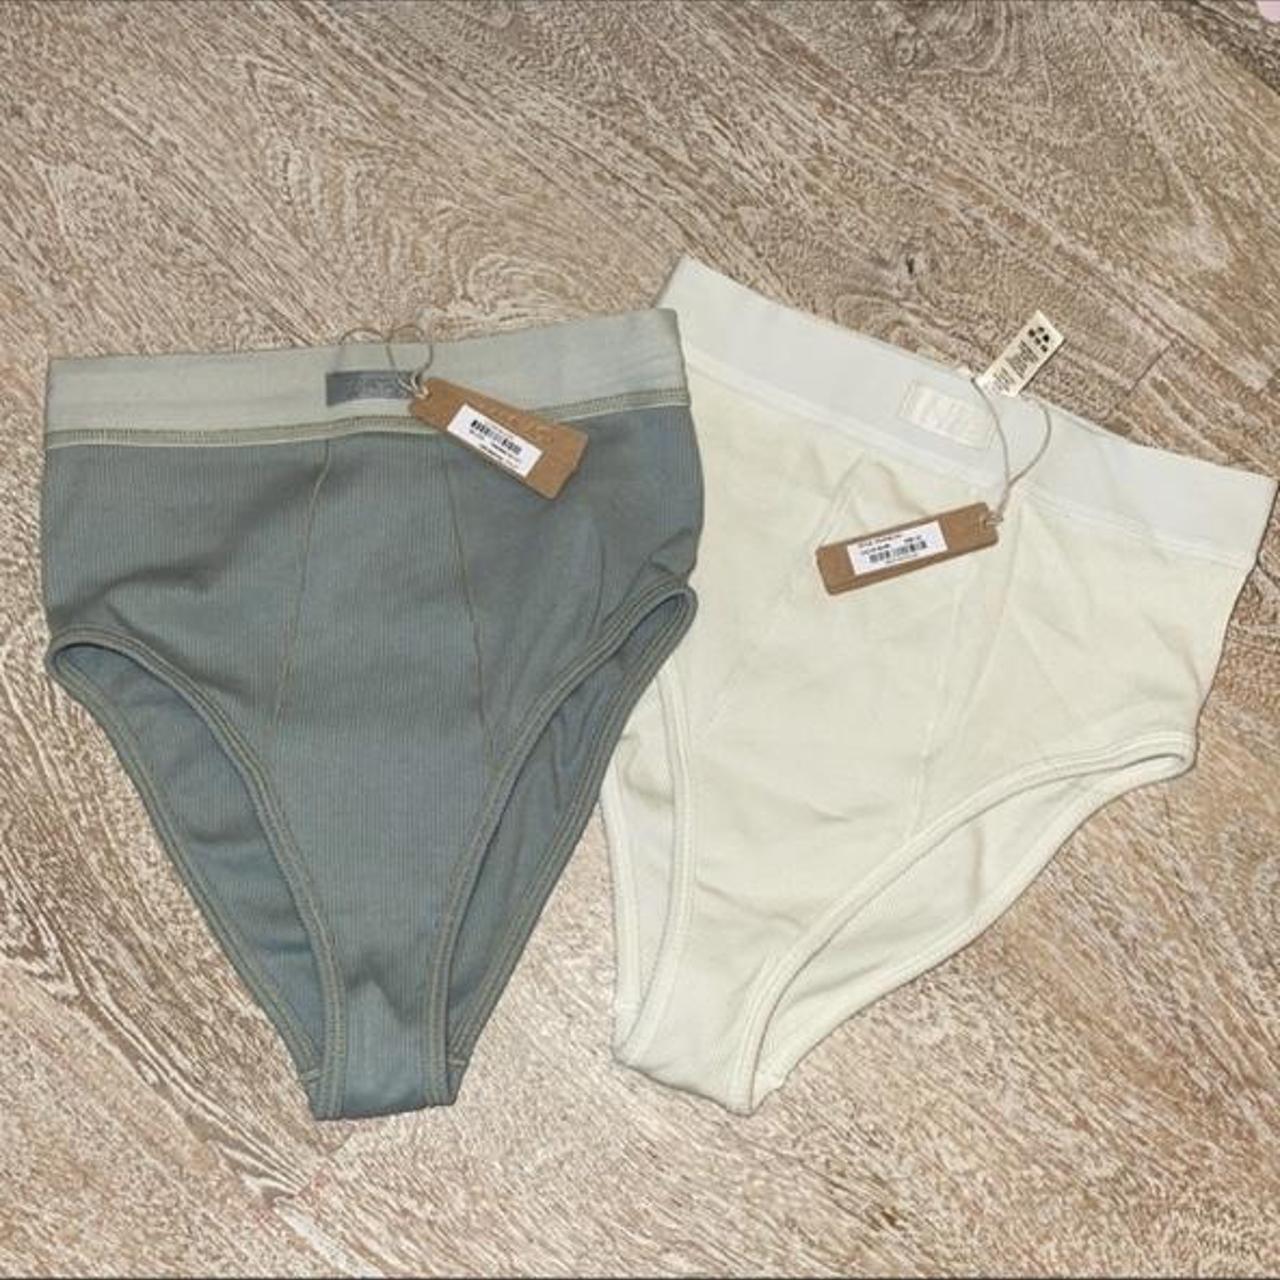 Skims underwear mineral and bone NWT XS High - Depop